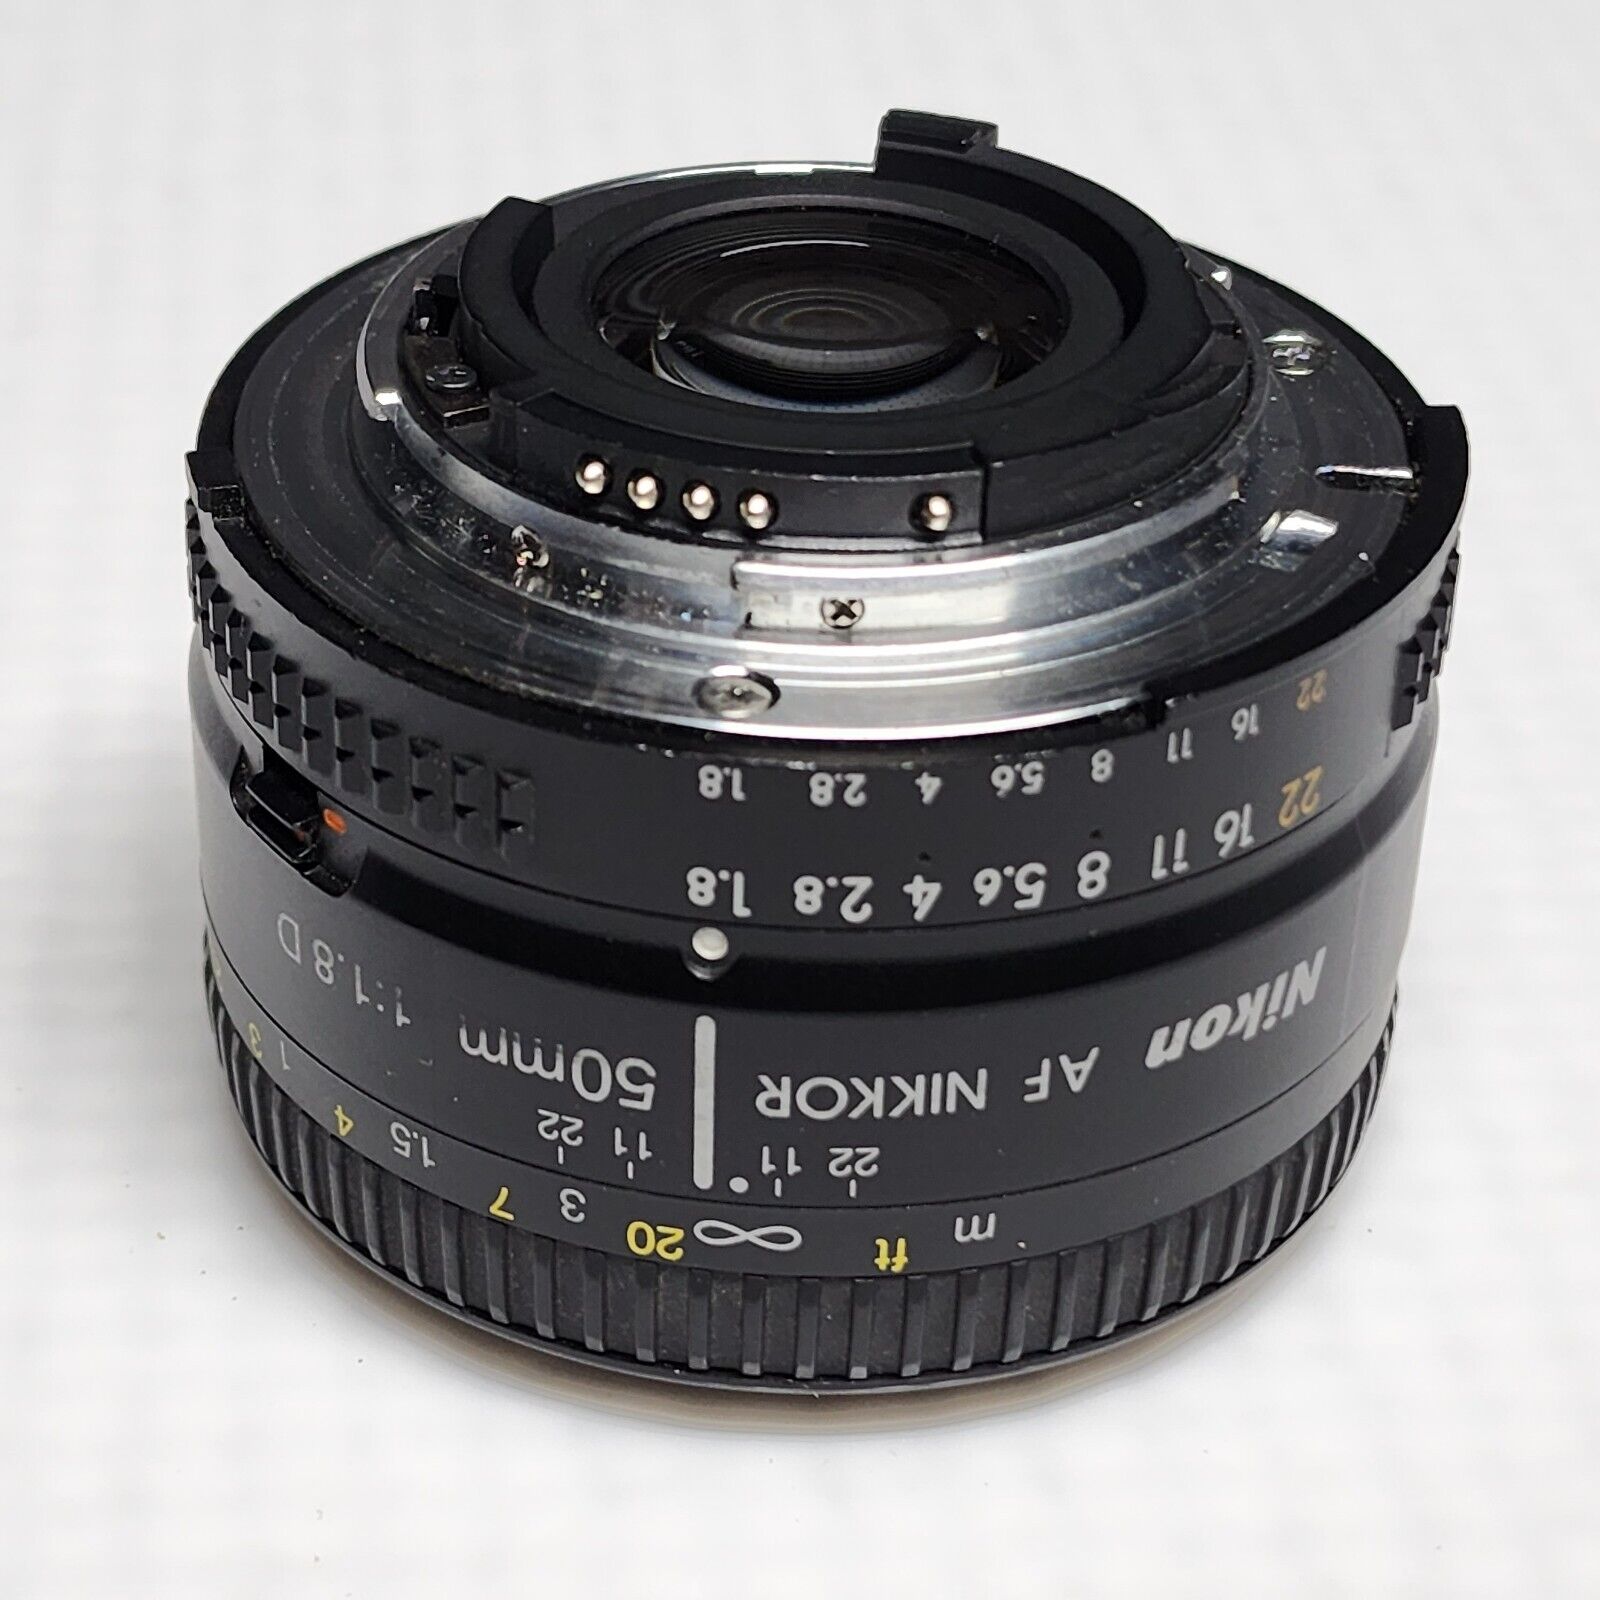 Nikon EM Black SLR Film Camera + Nikkor 50mm f/1:1.8 D Lense